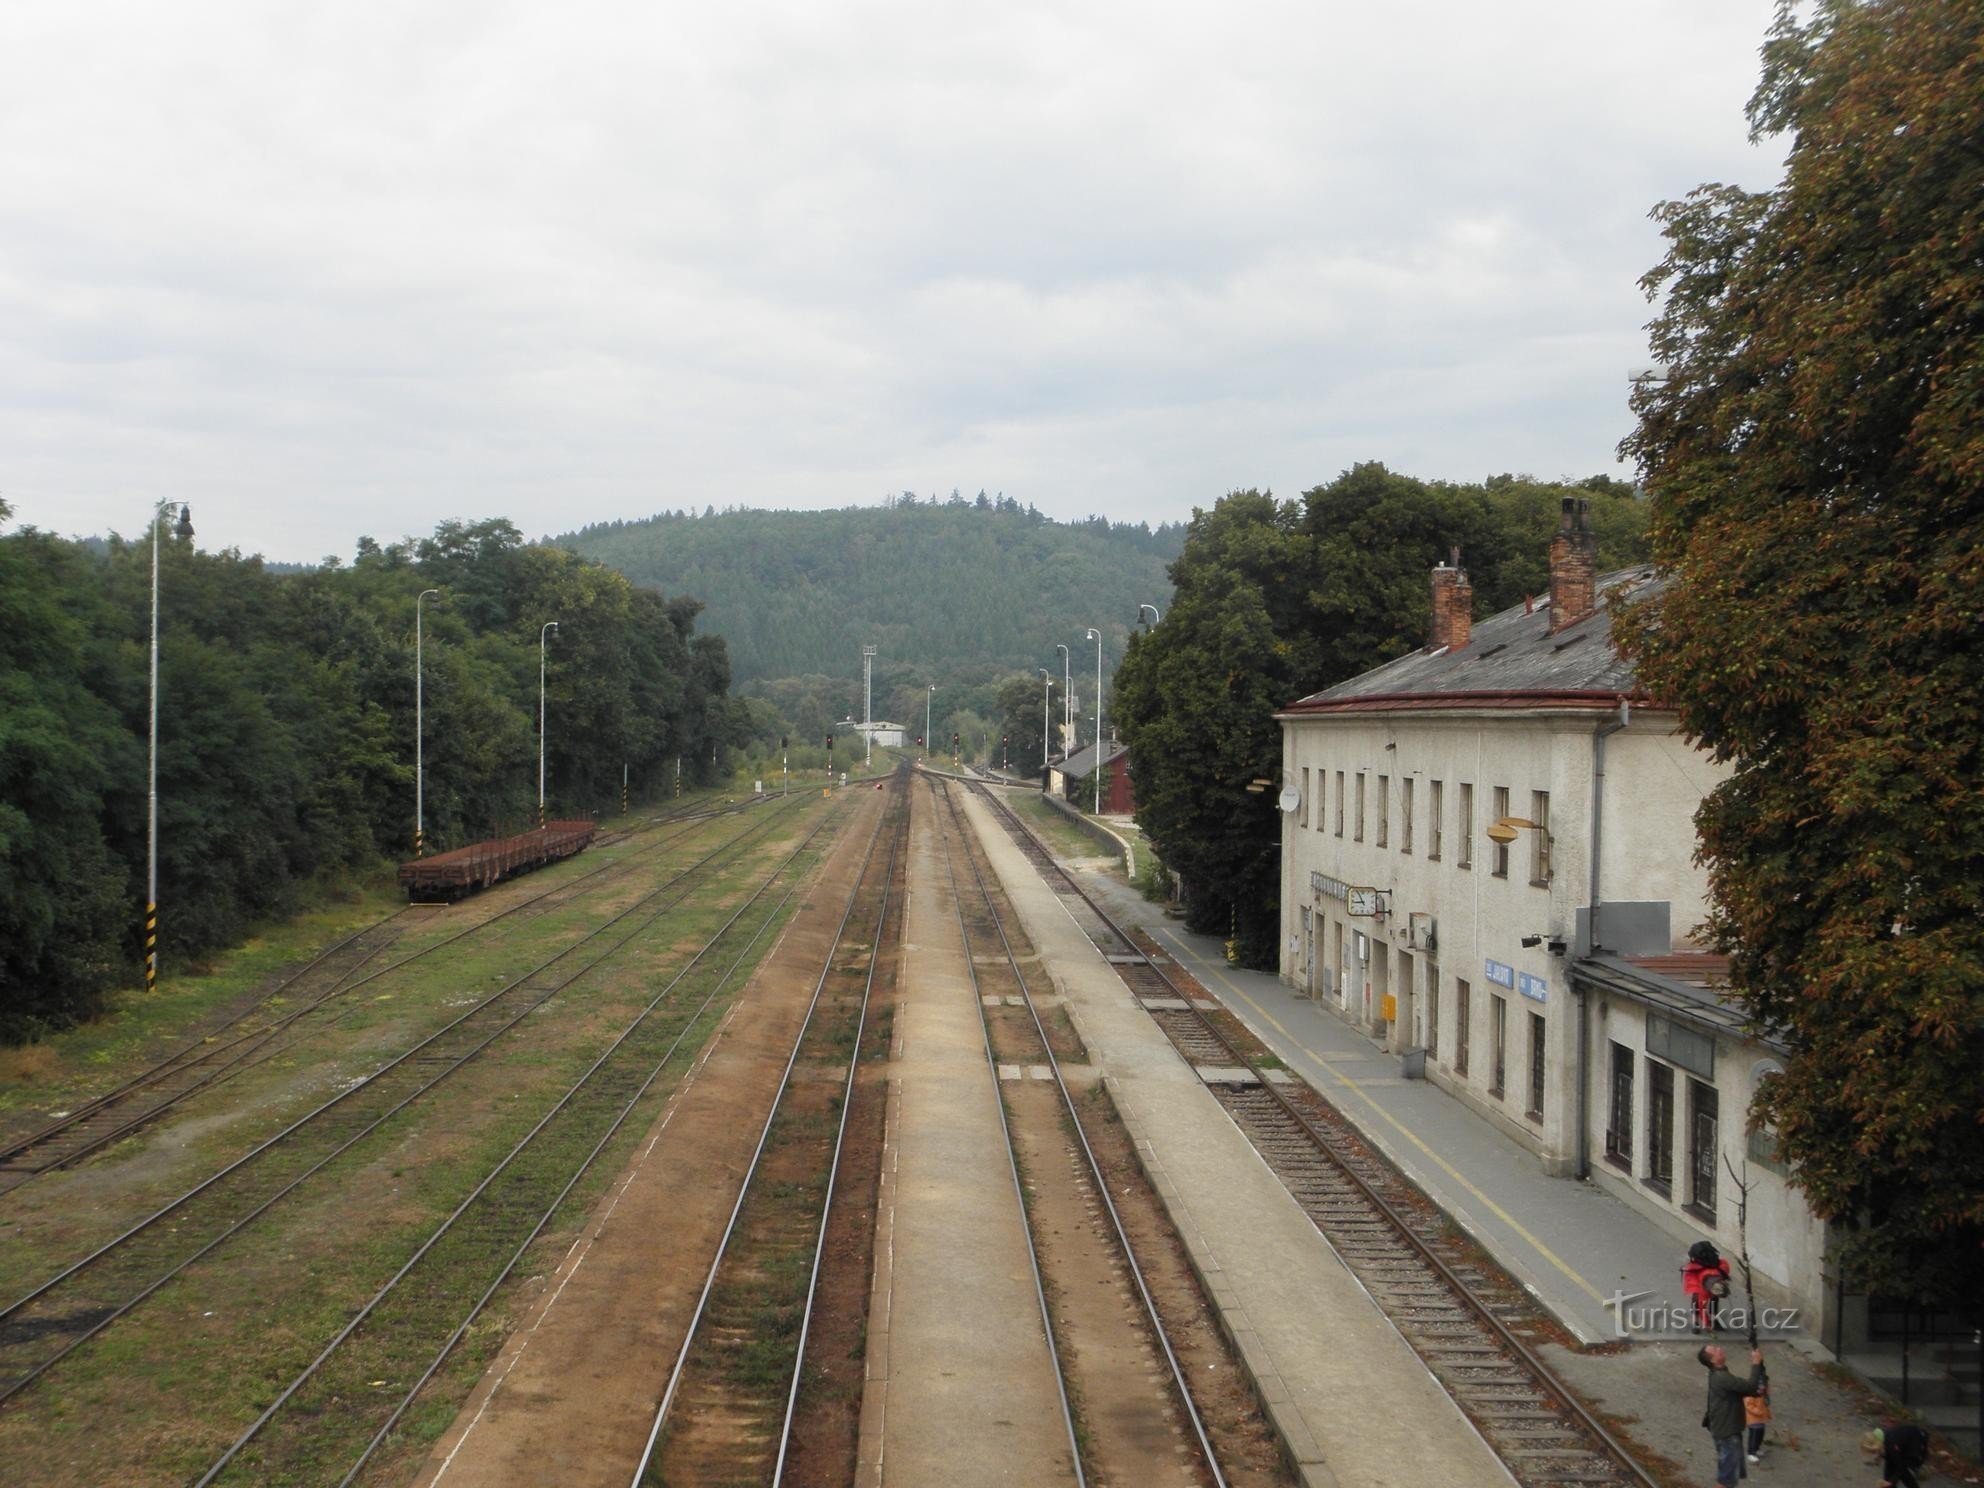 Railway station near Brno - 17.9.2011